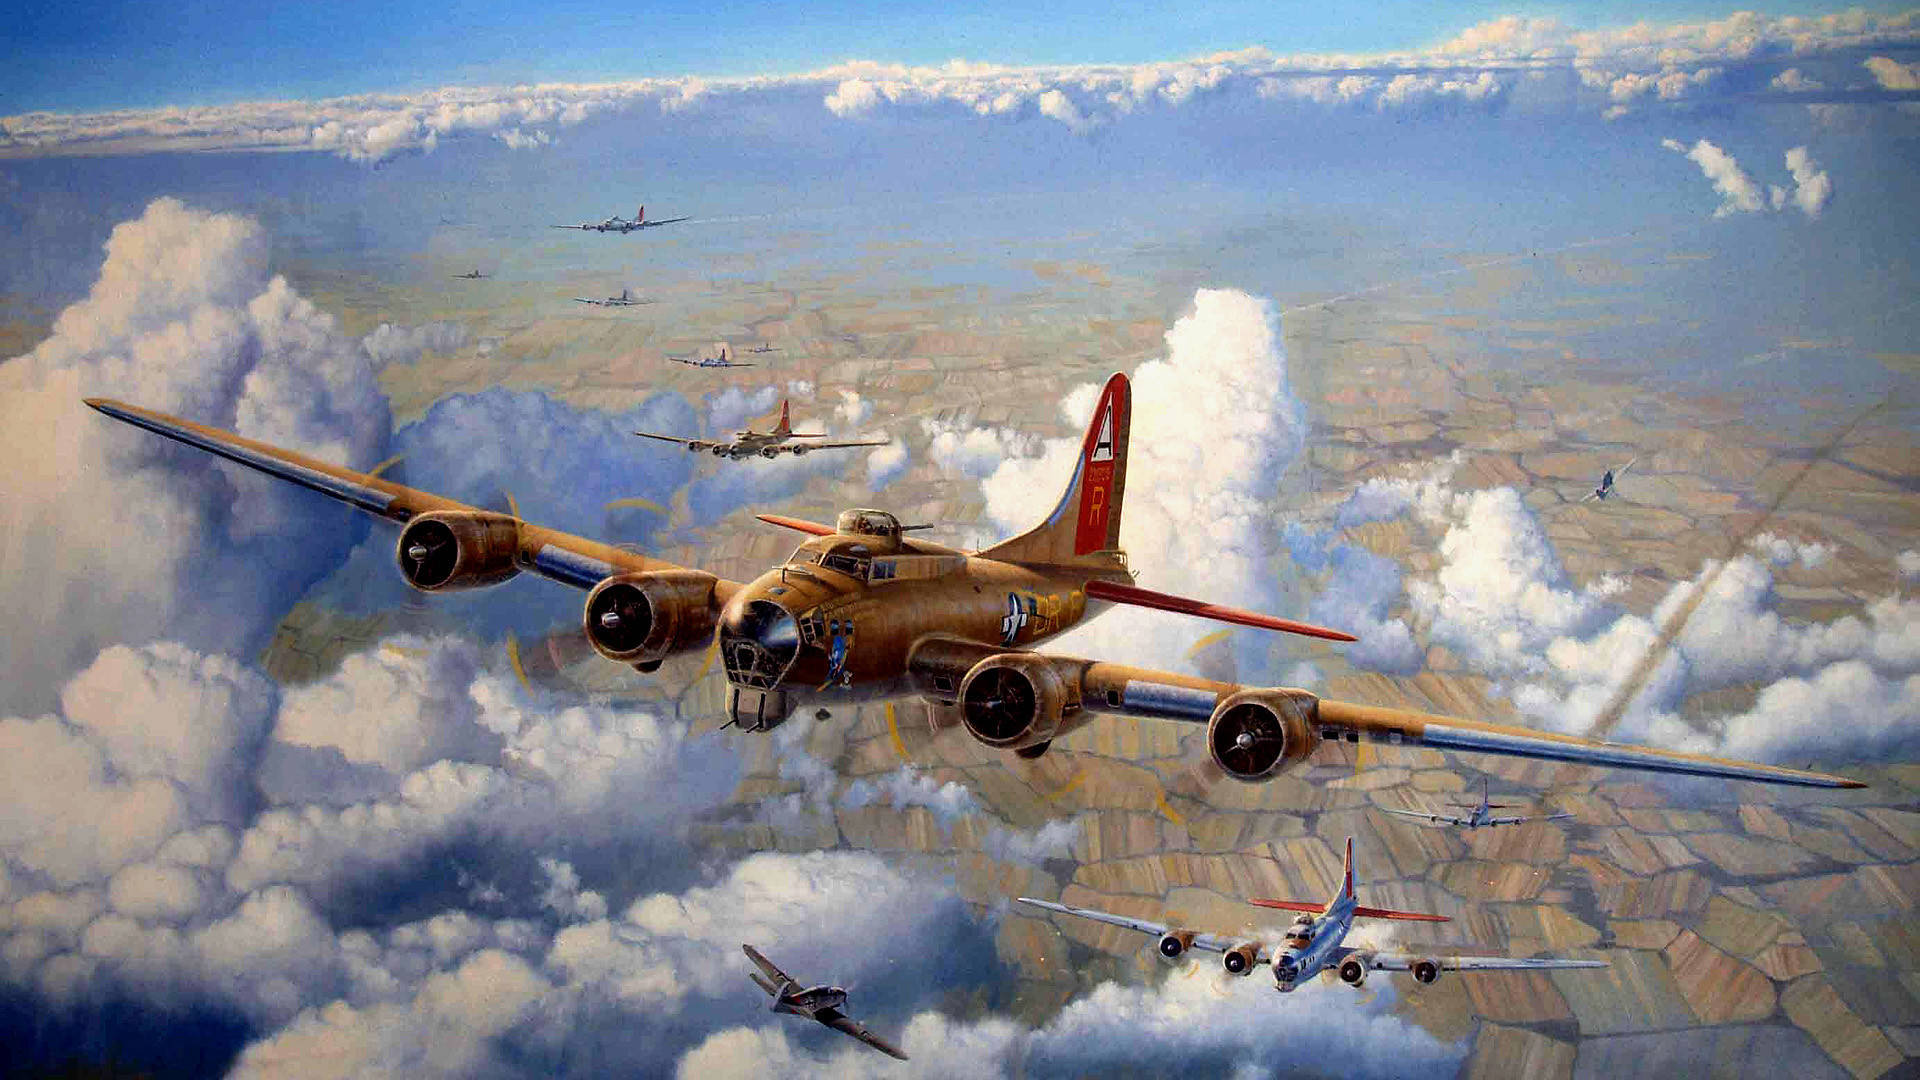 Hd Plane War Artwork Background